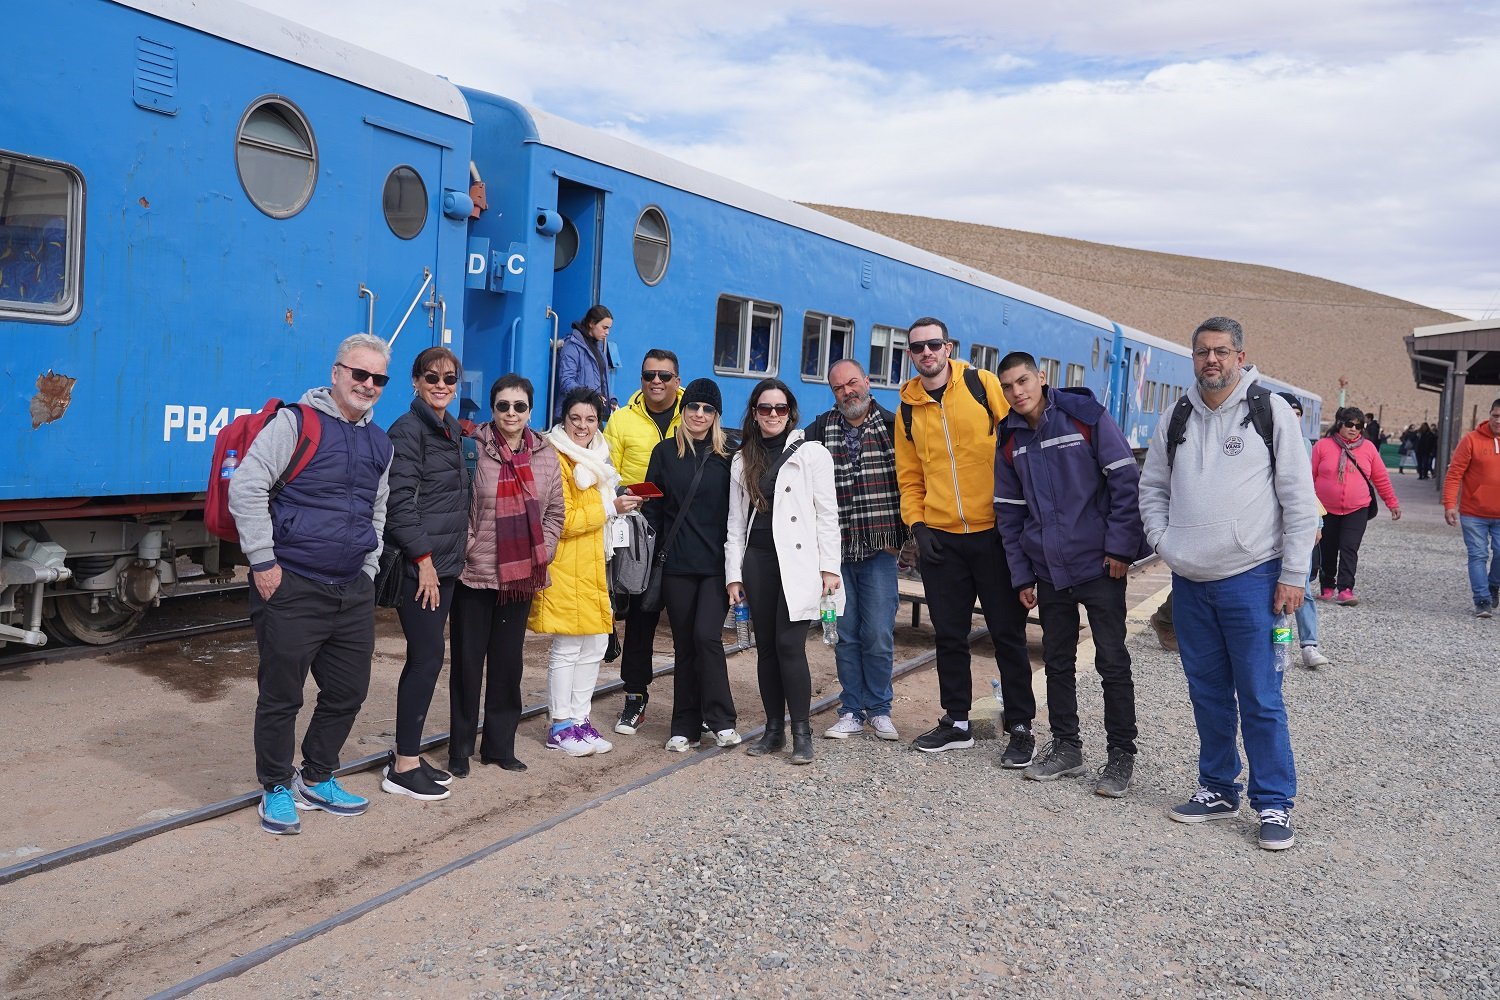 Grupo de jornalistas e agentes de viagens convidados para a experiência em Salta. Foto: Cesar Valdivieso